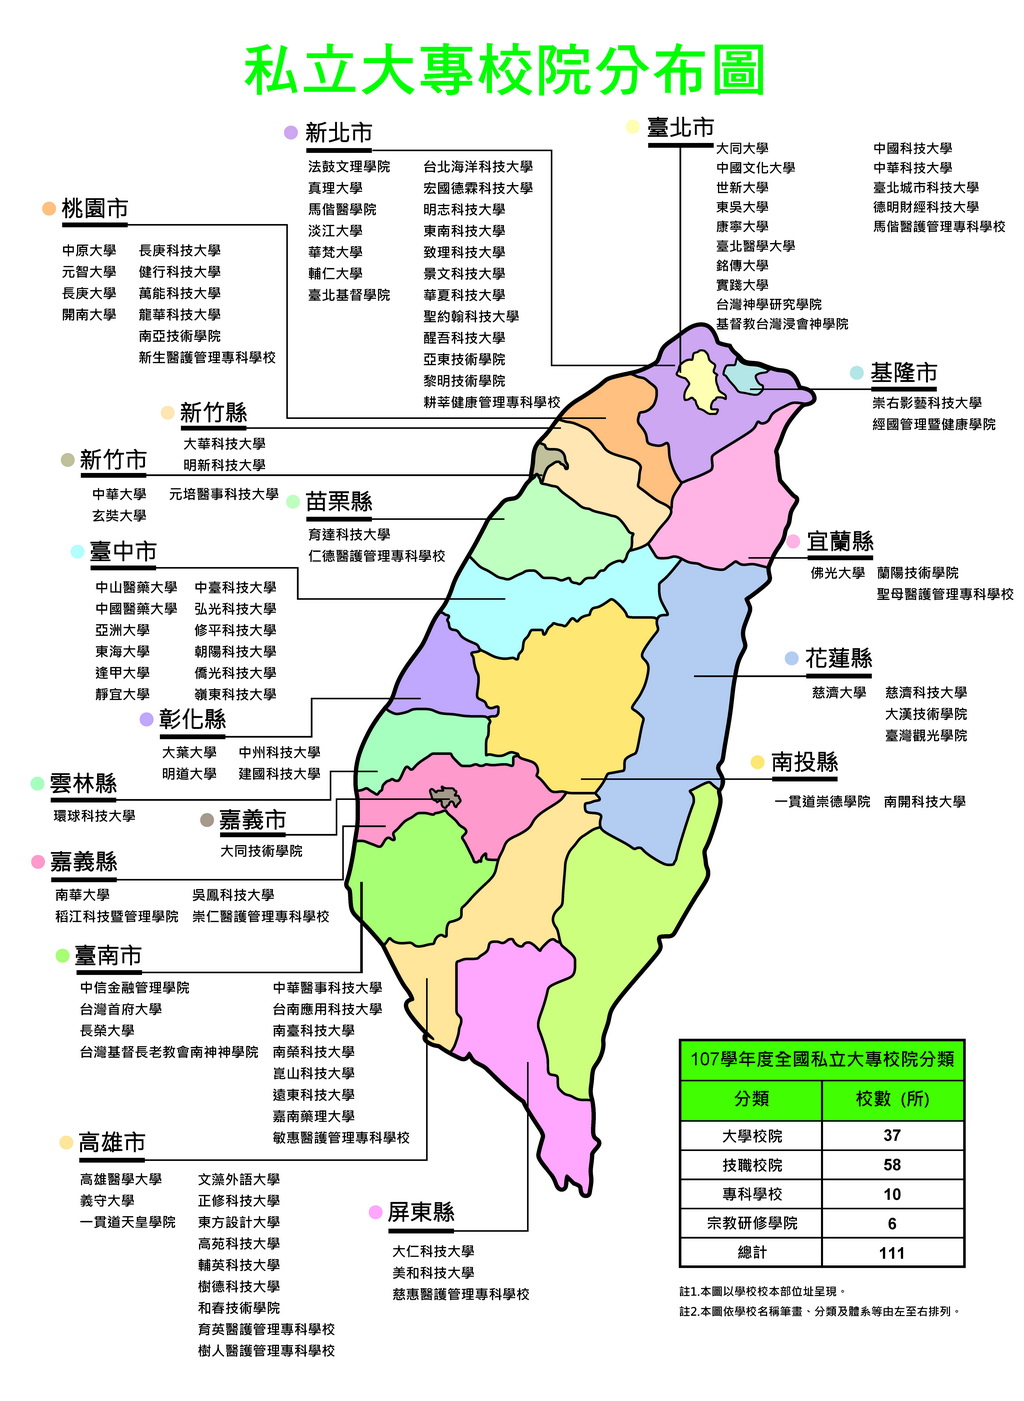 臺灣私立大專院校分佈圖